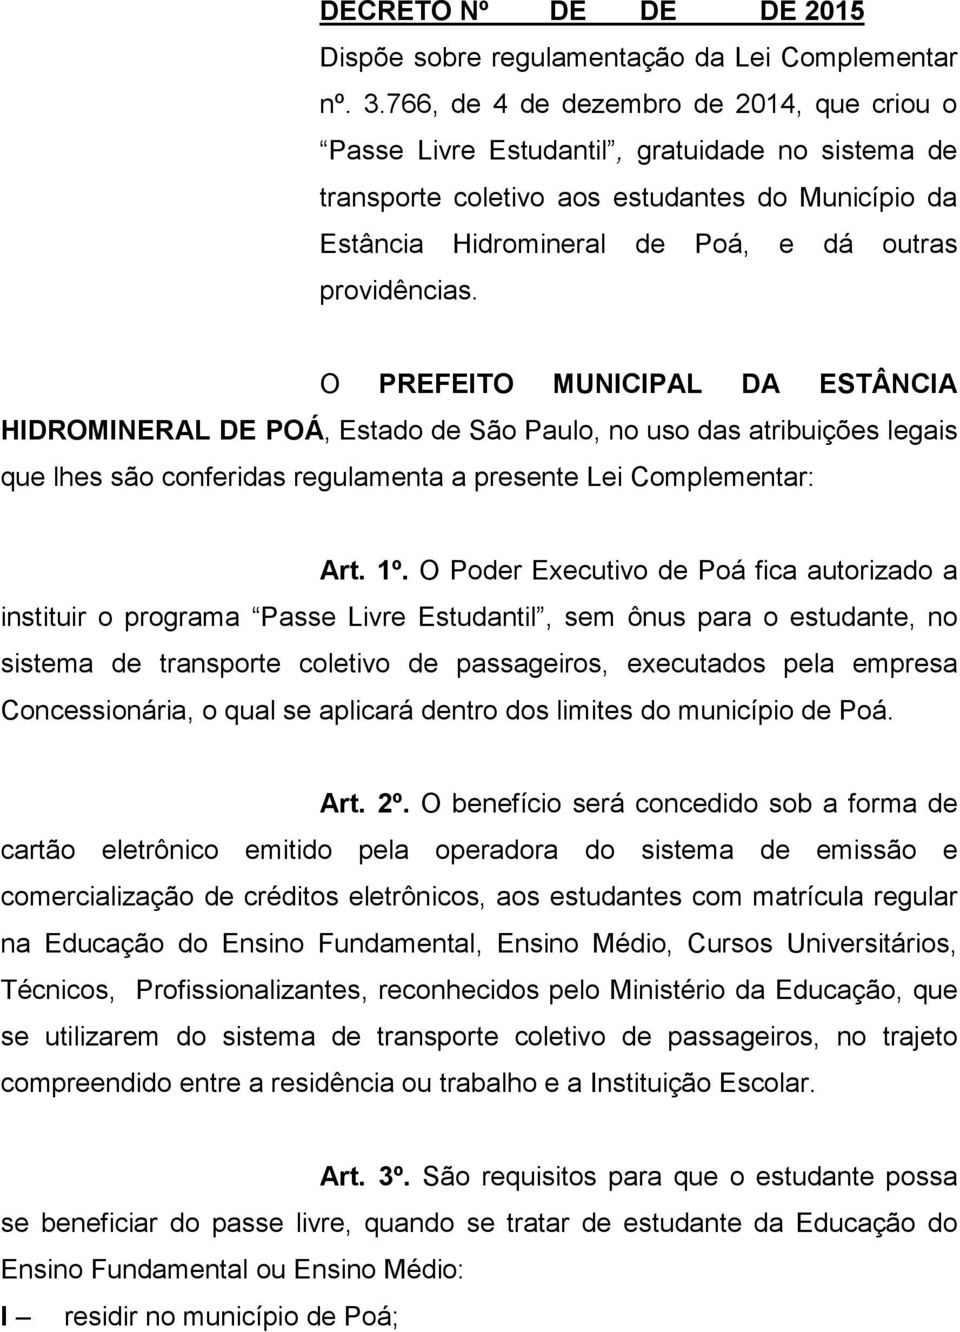 O PREFEITO MUNICIPAL DA ESTÂNCIA HIDROMINERAL DE POÁ, Estado de São Paulo, no uso das atribuições legais que lhes são conferidas regulamenta a presente Lei Complementar: Art. 1º.